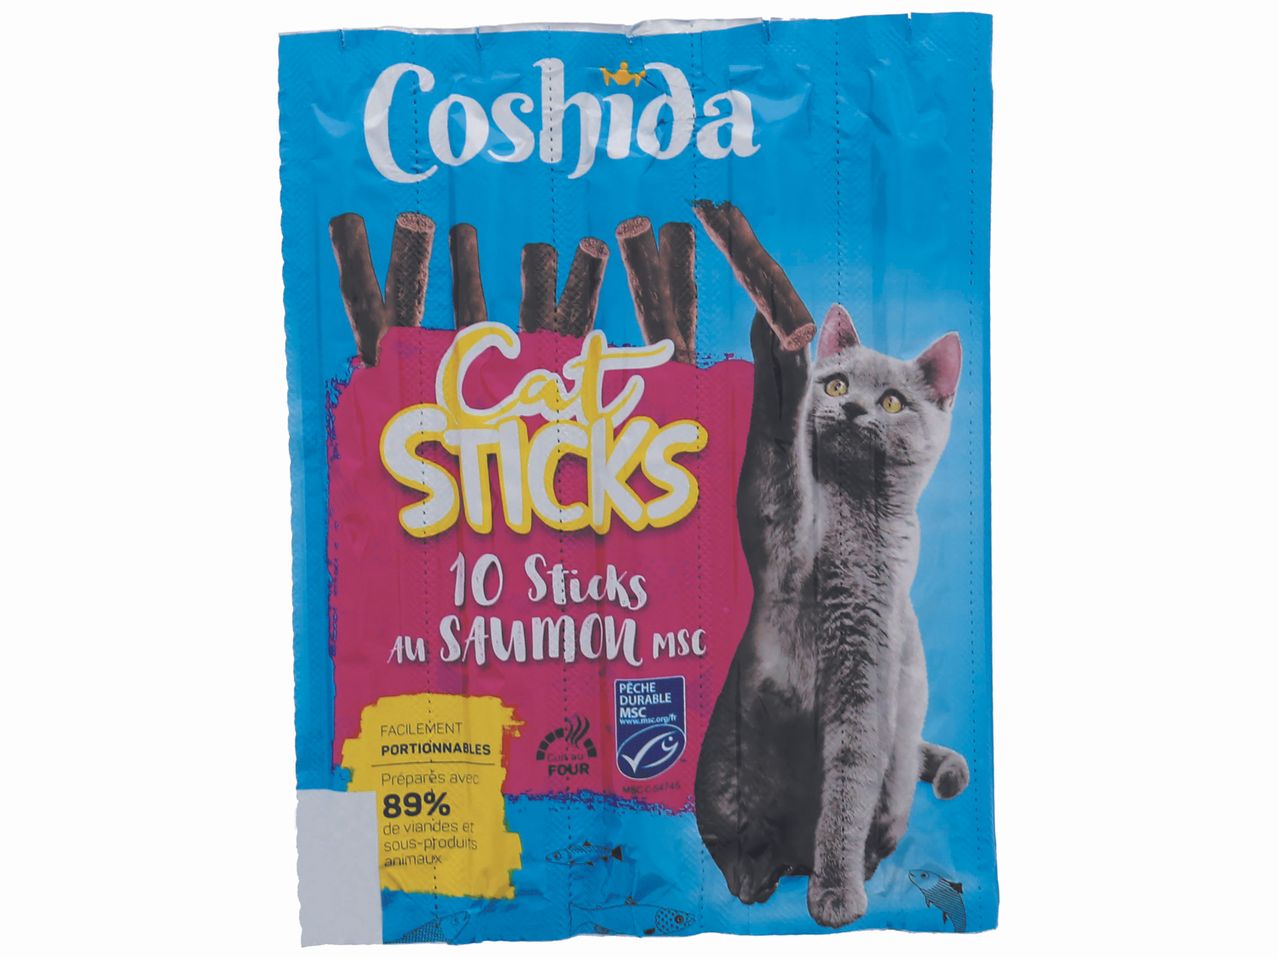 Sticks friandise pour chat , prezzo 1.37 EUR 
Sticks friandise pour chat 
- Le produit ...